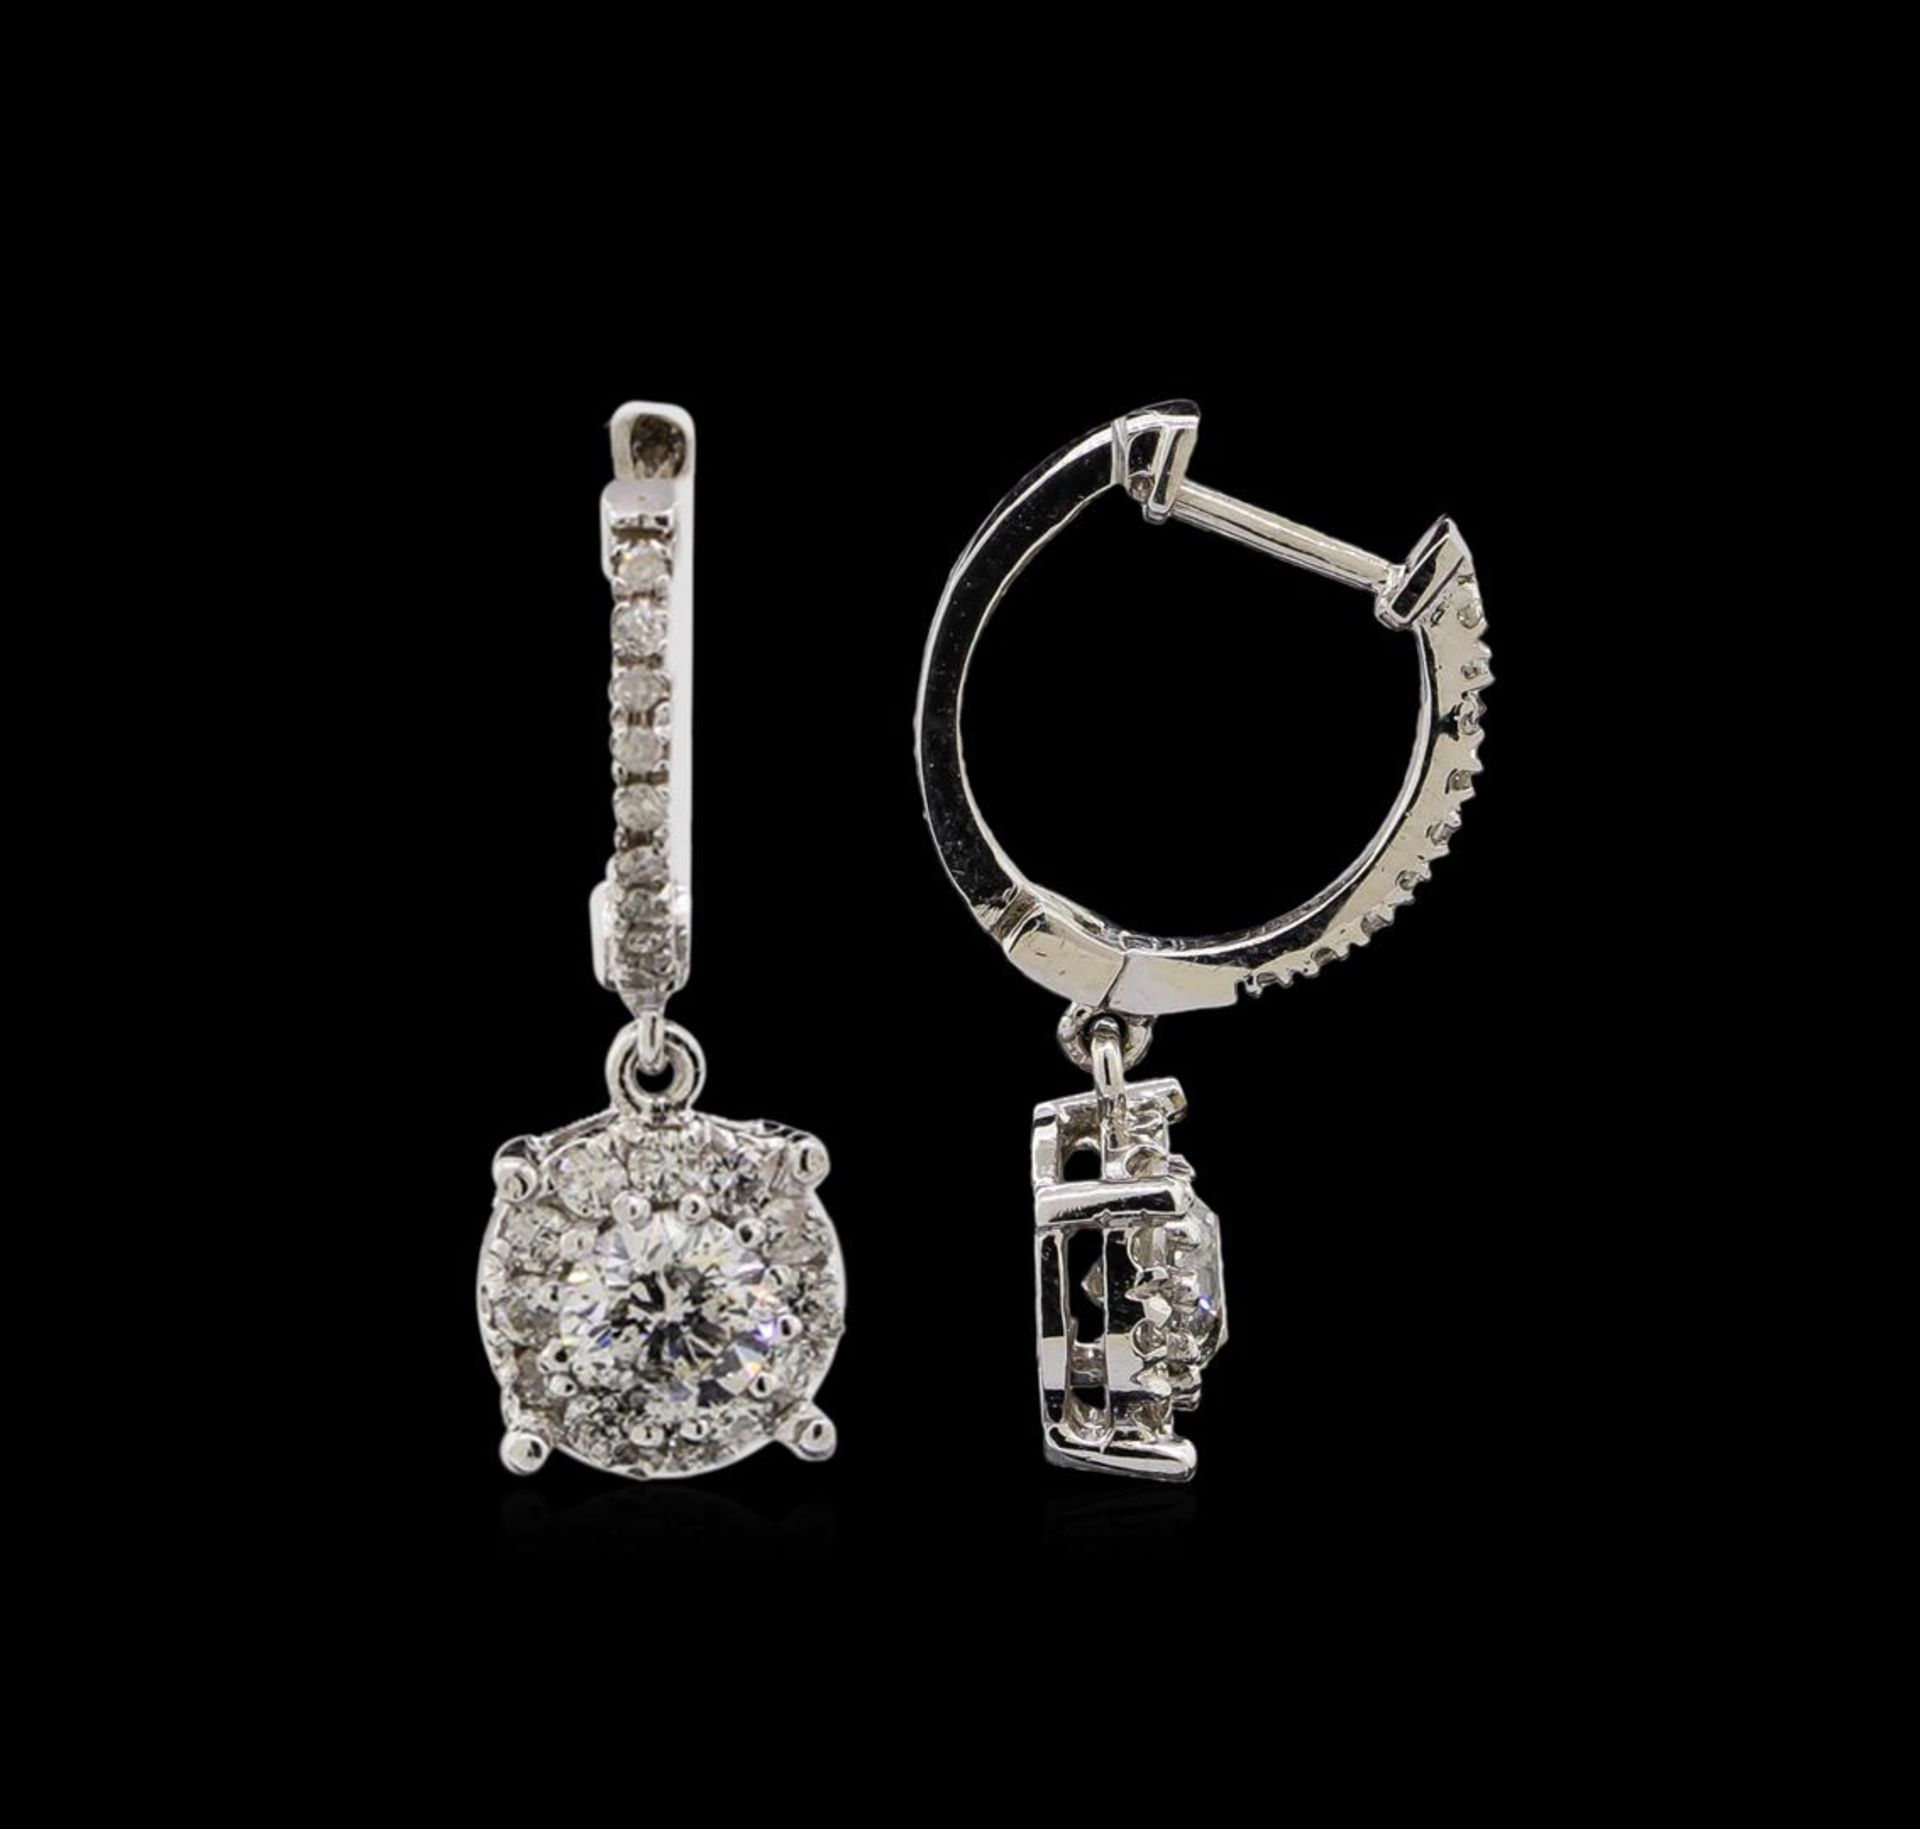 14KT White Gold 1.03 ctw Diamond Earrings - Image 2 of 3